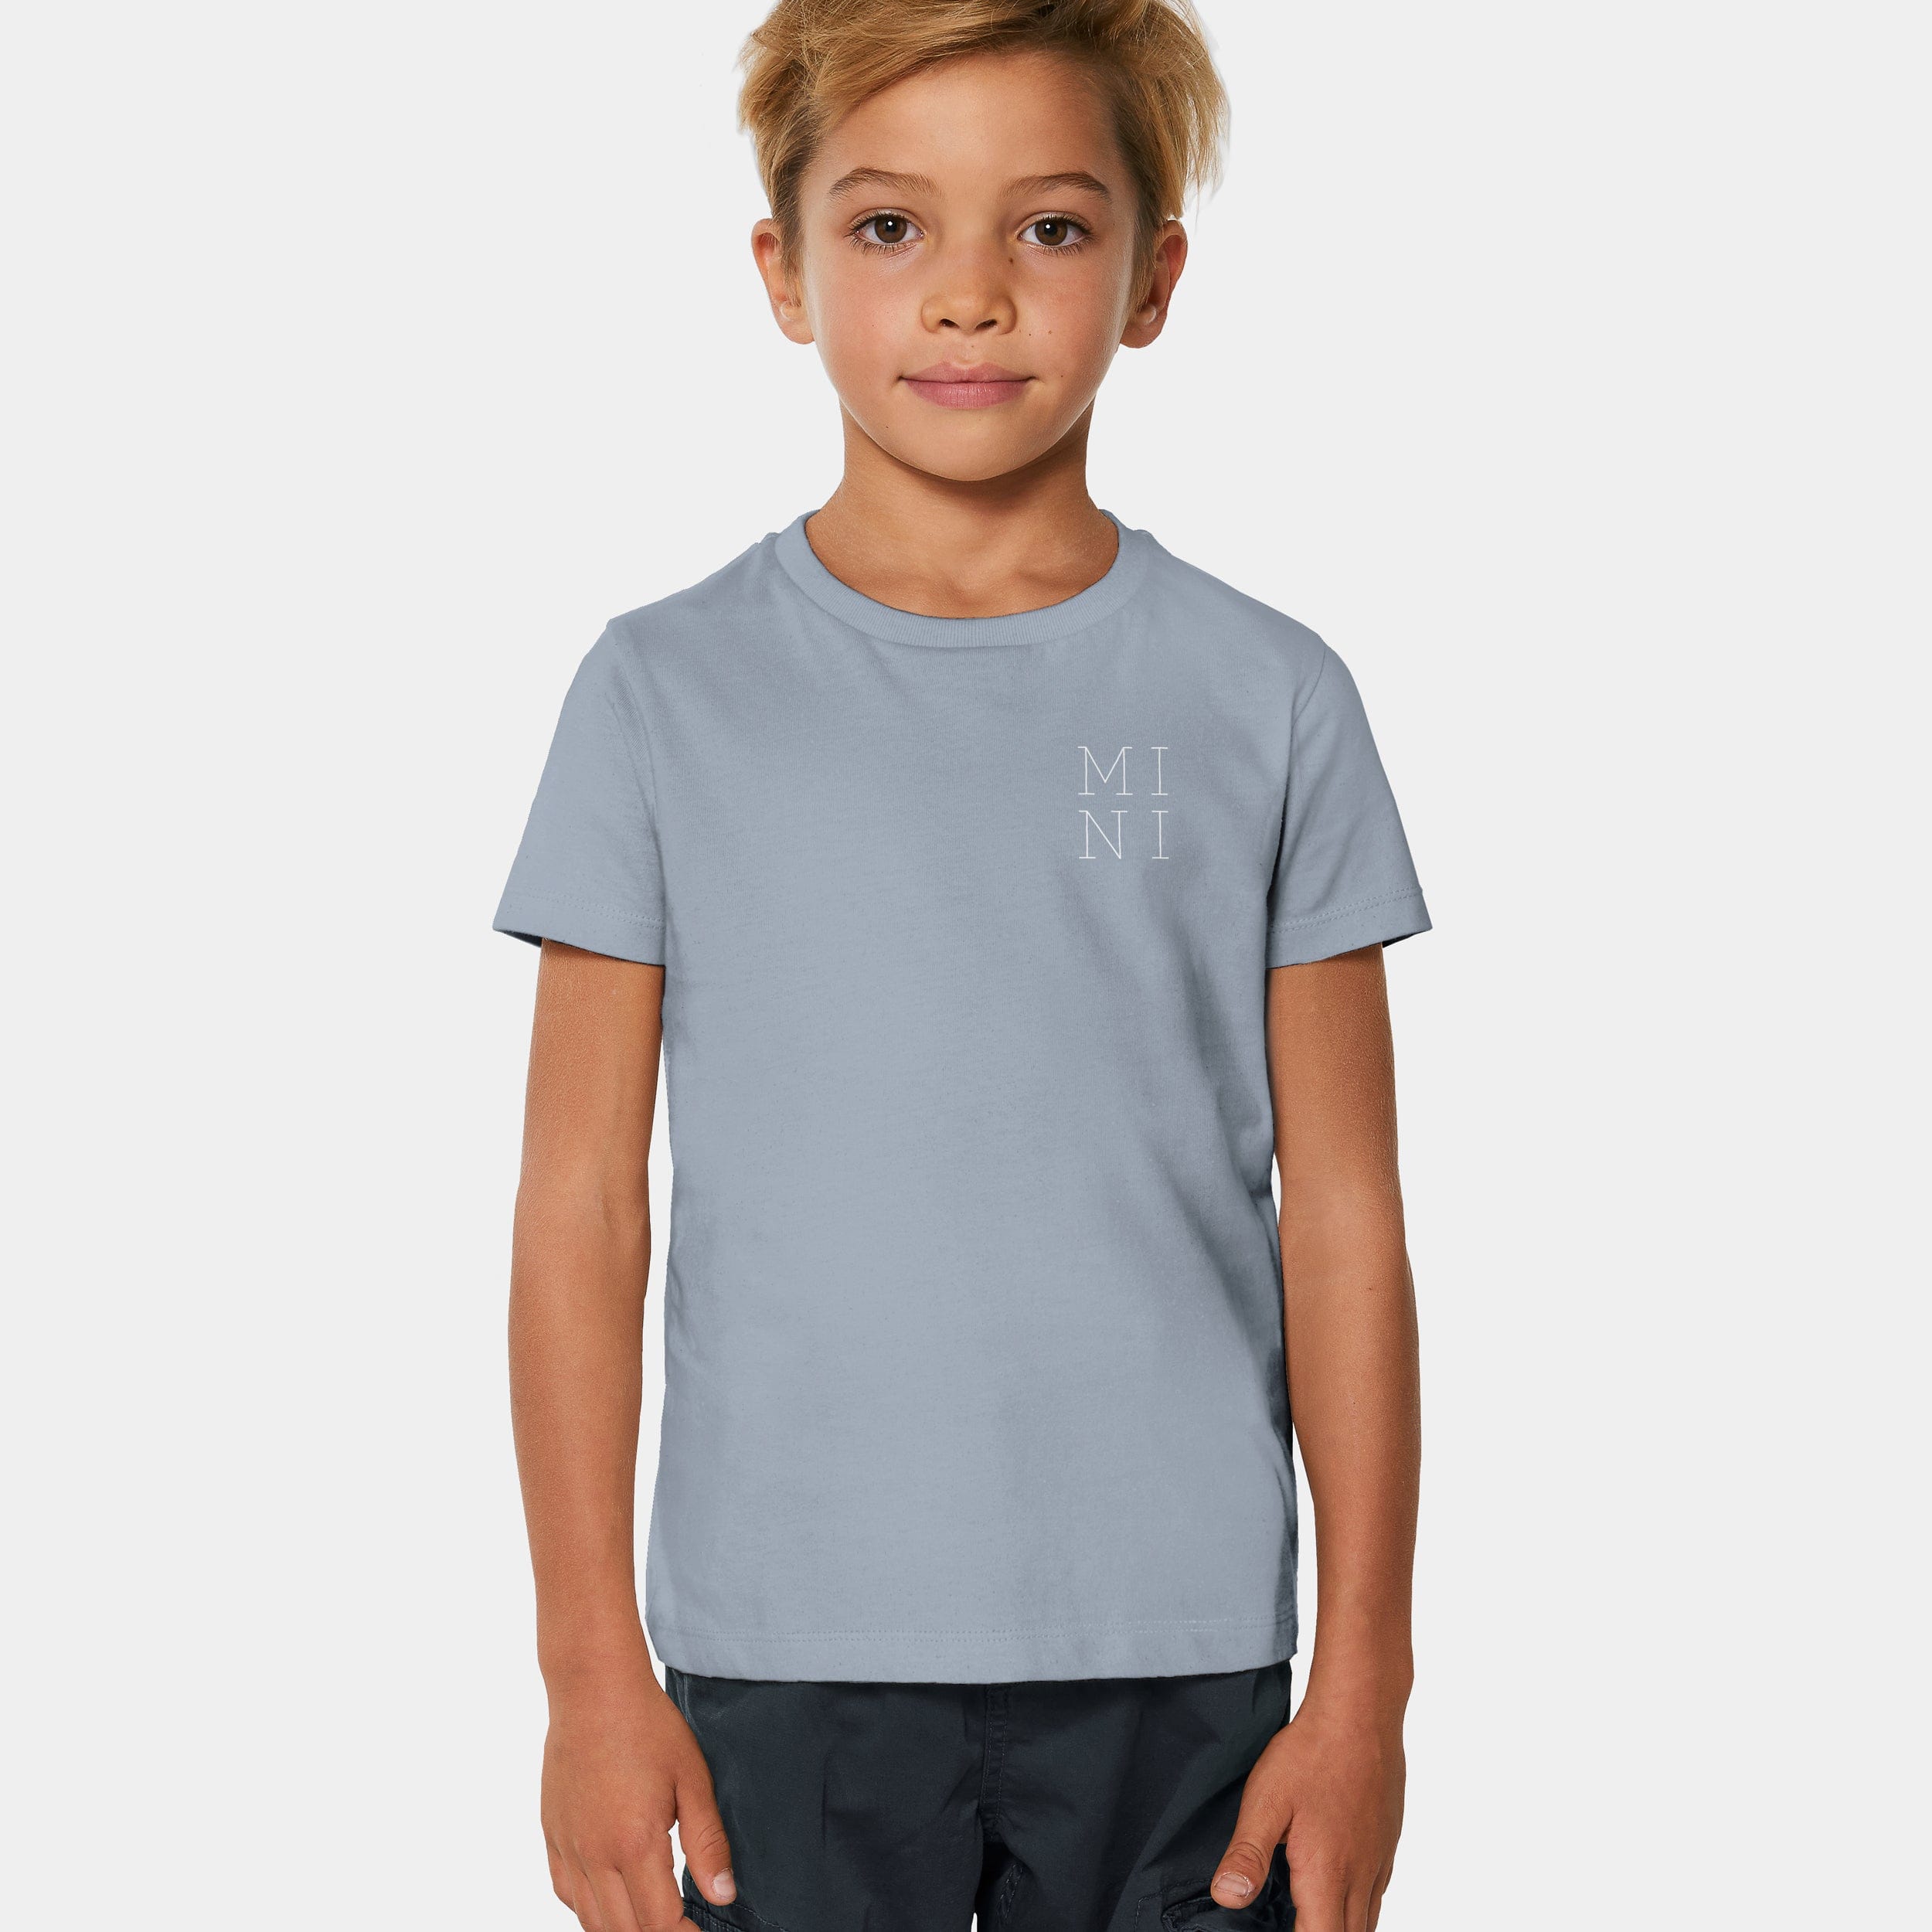 HEITER & LÄSSIG T-Shirt "MINI" 98/104 / serene blue - aus nachhaltiger und fairer Produktion